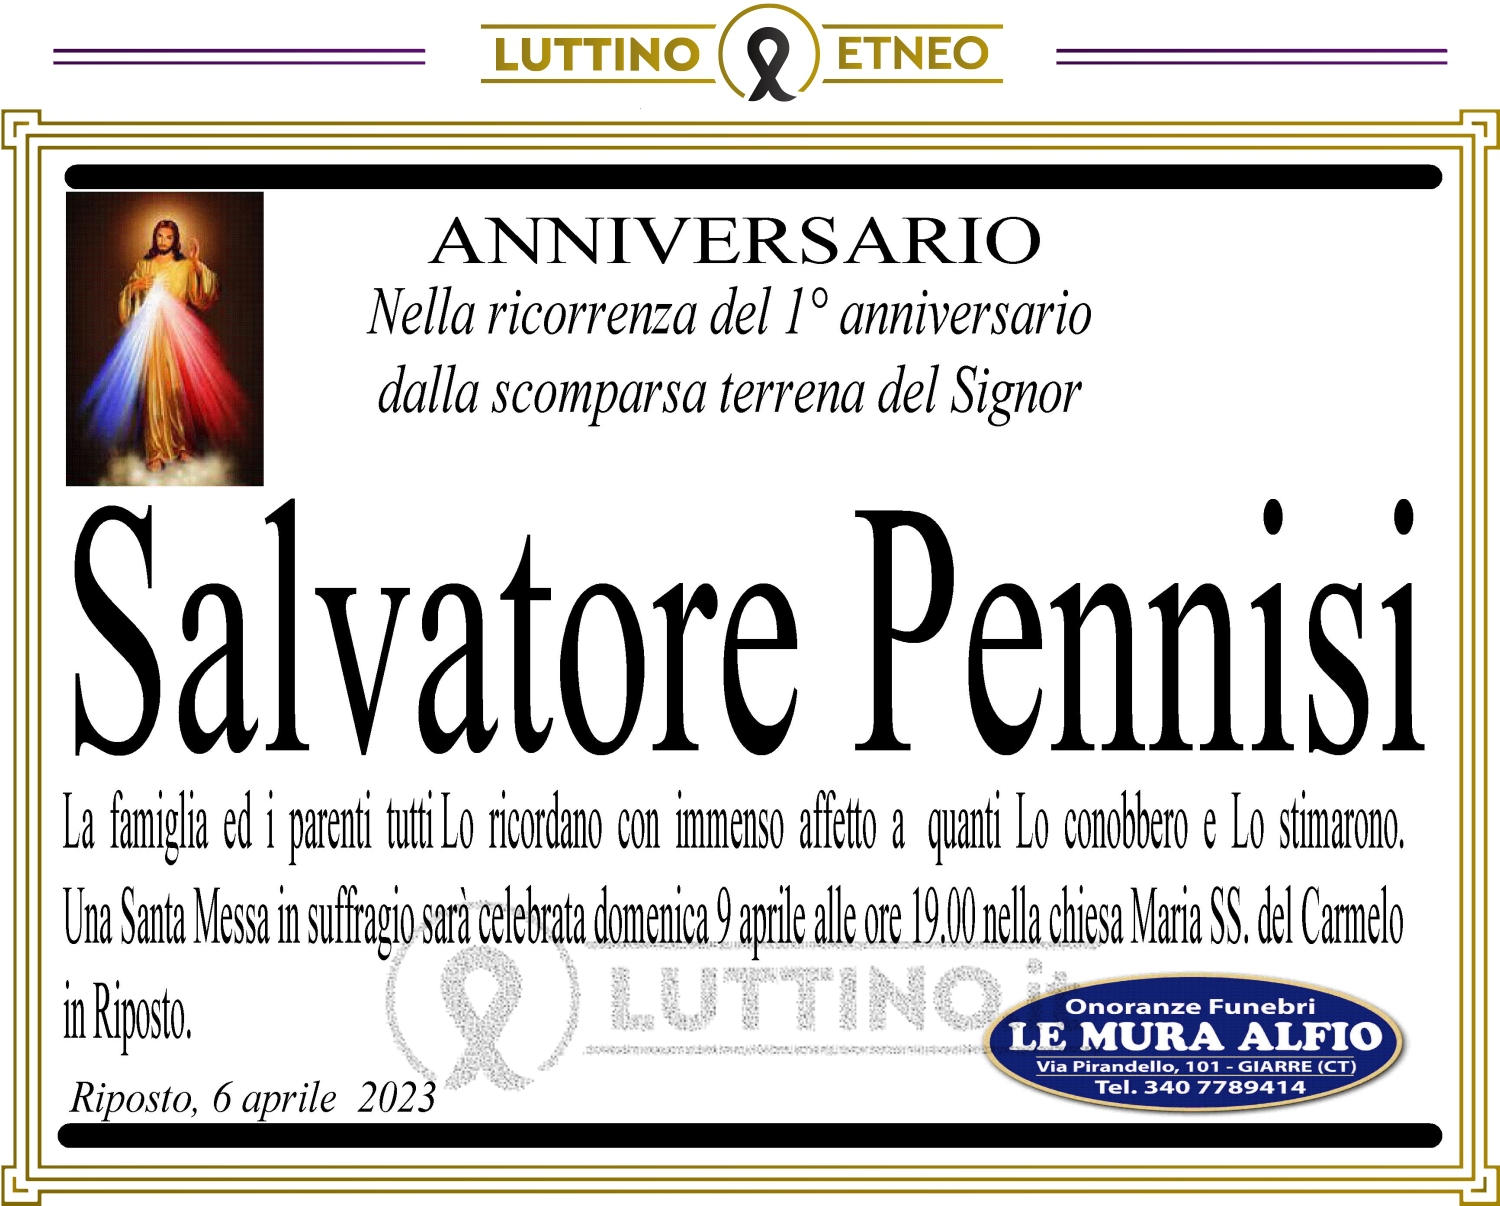 Salvatore Pennisi